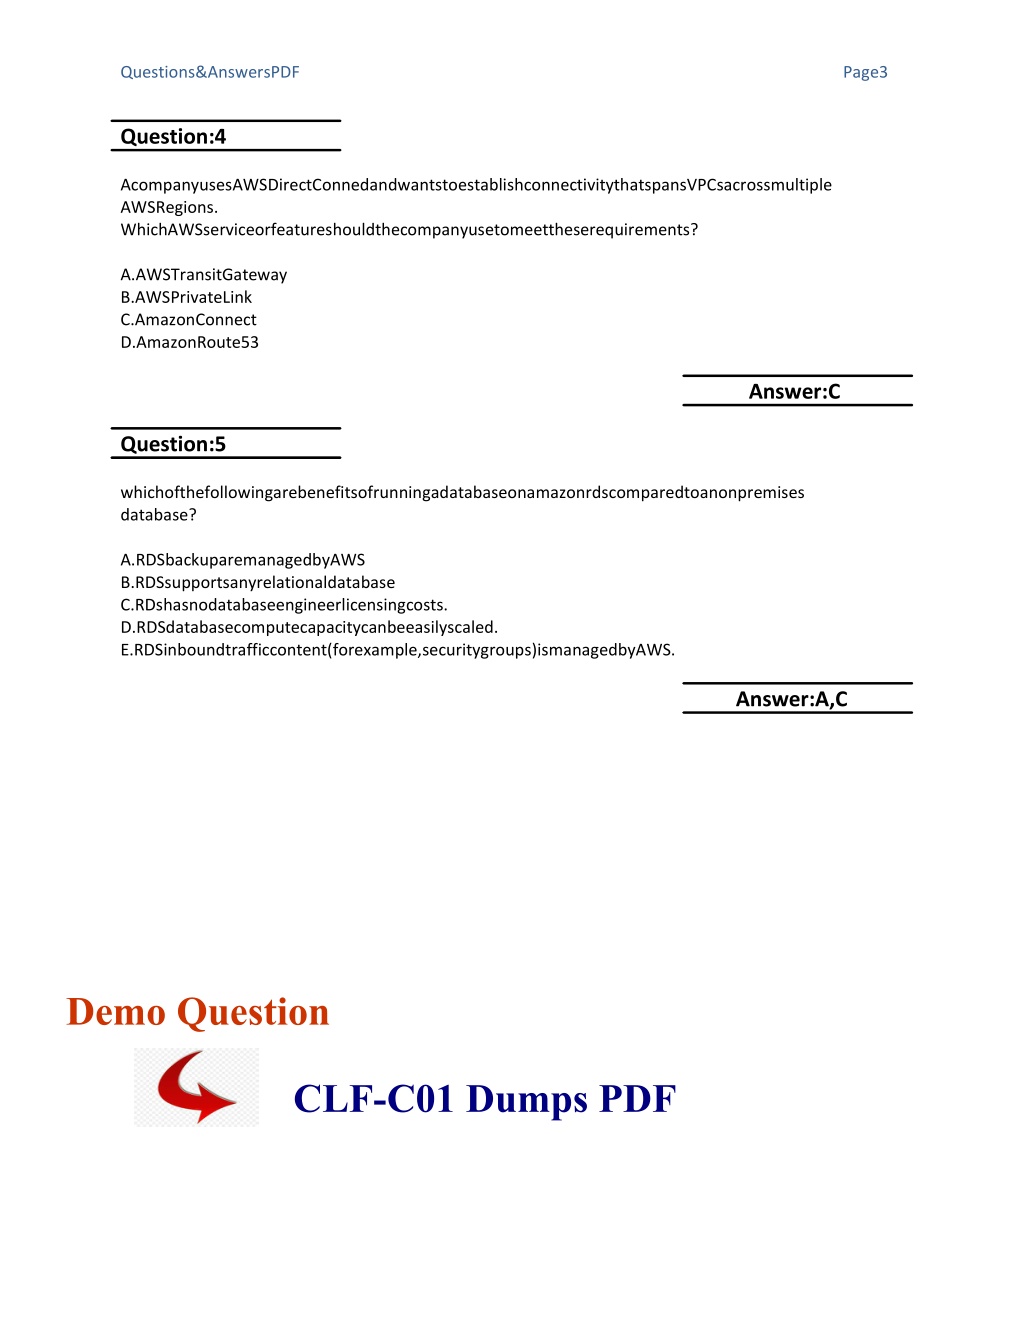 CLF-C01 Online Test